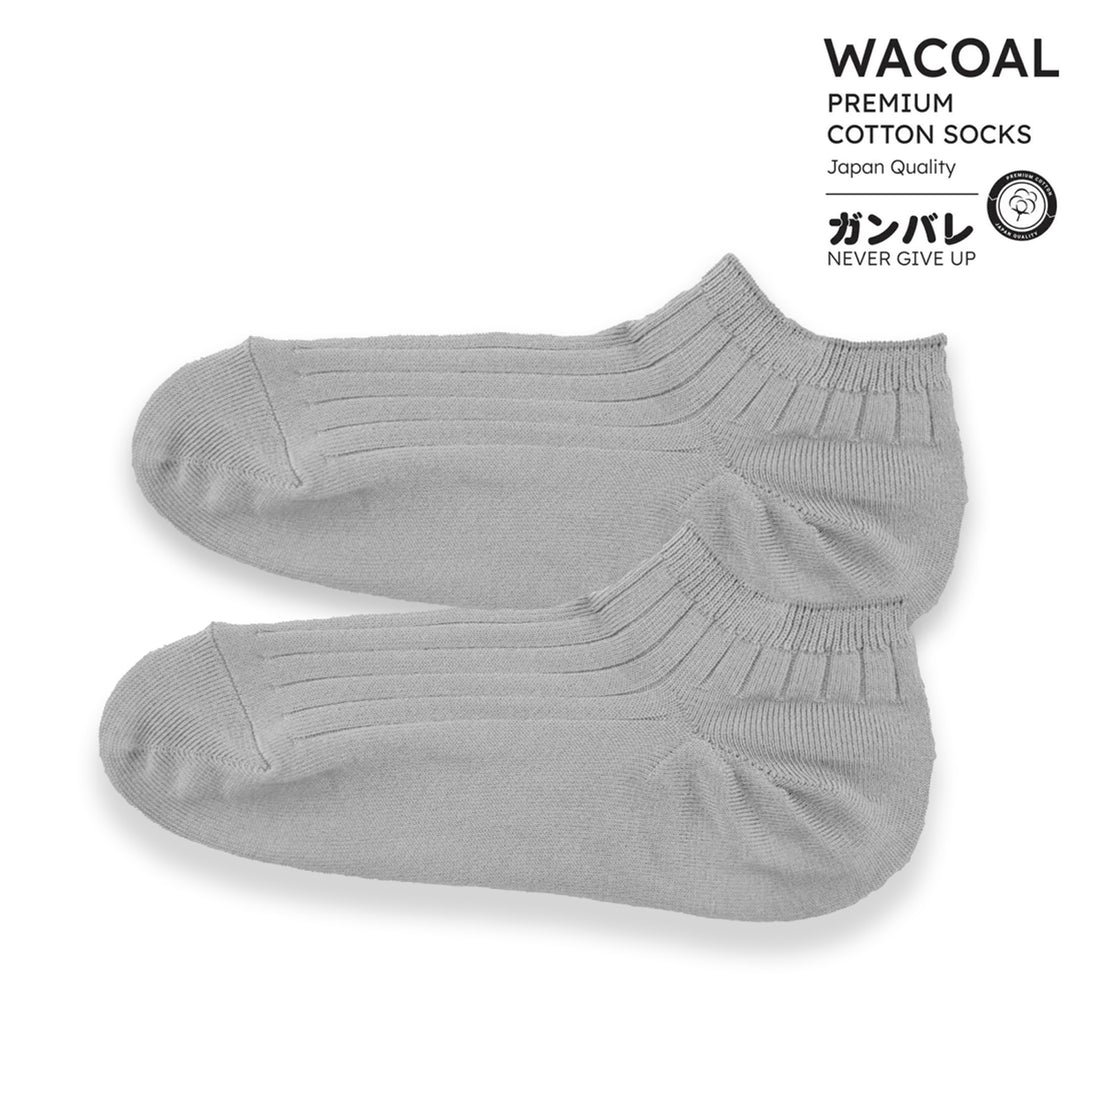 ถุงเท้าข้้อสั้น Cotton Socks Anti-bacteria รุ่น WW1106 สีเทา (GY)